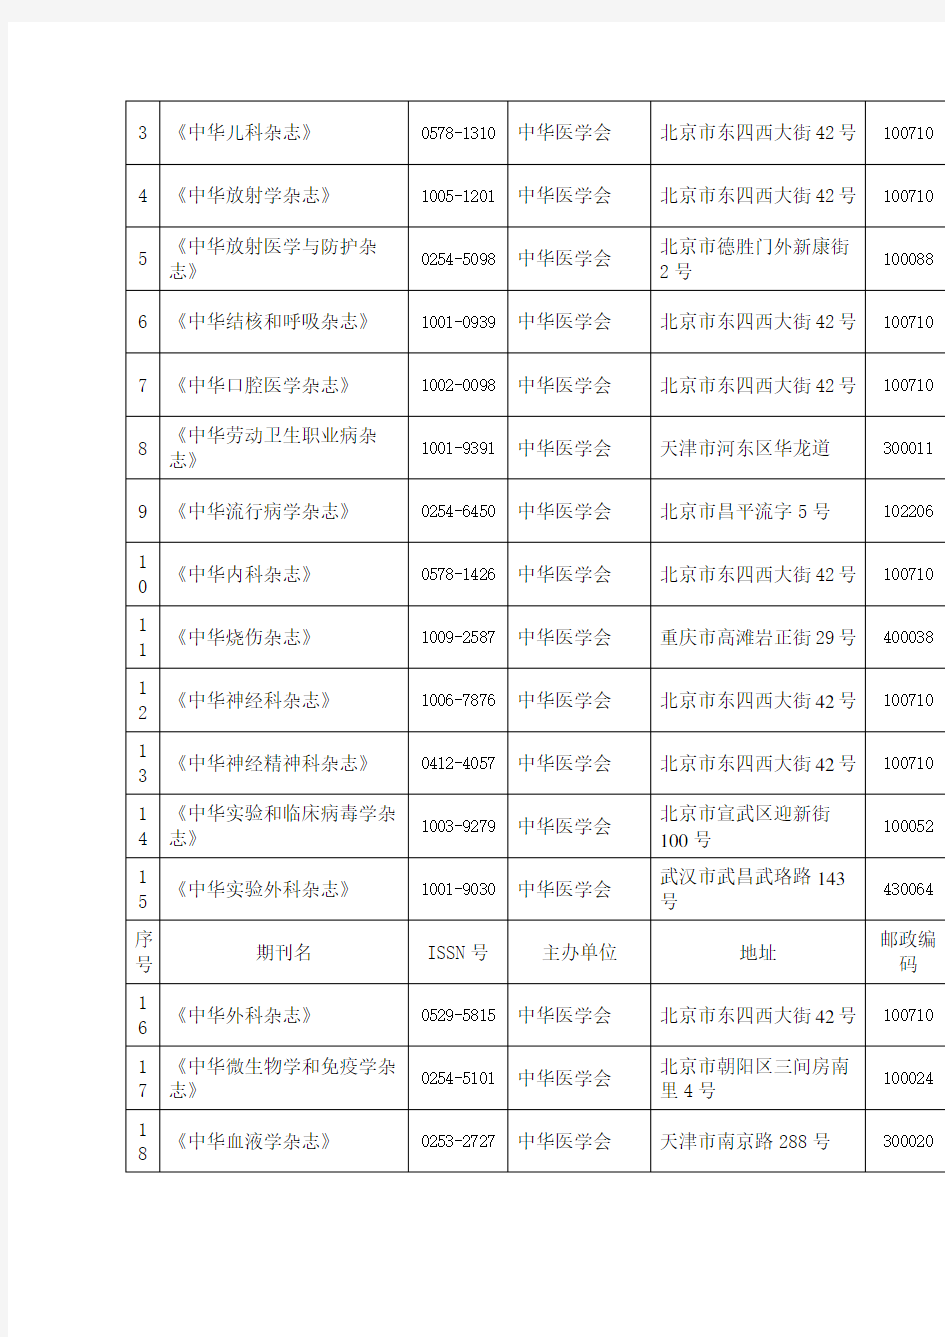 SCI收录的中国大陆出版的医学期刊名录